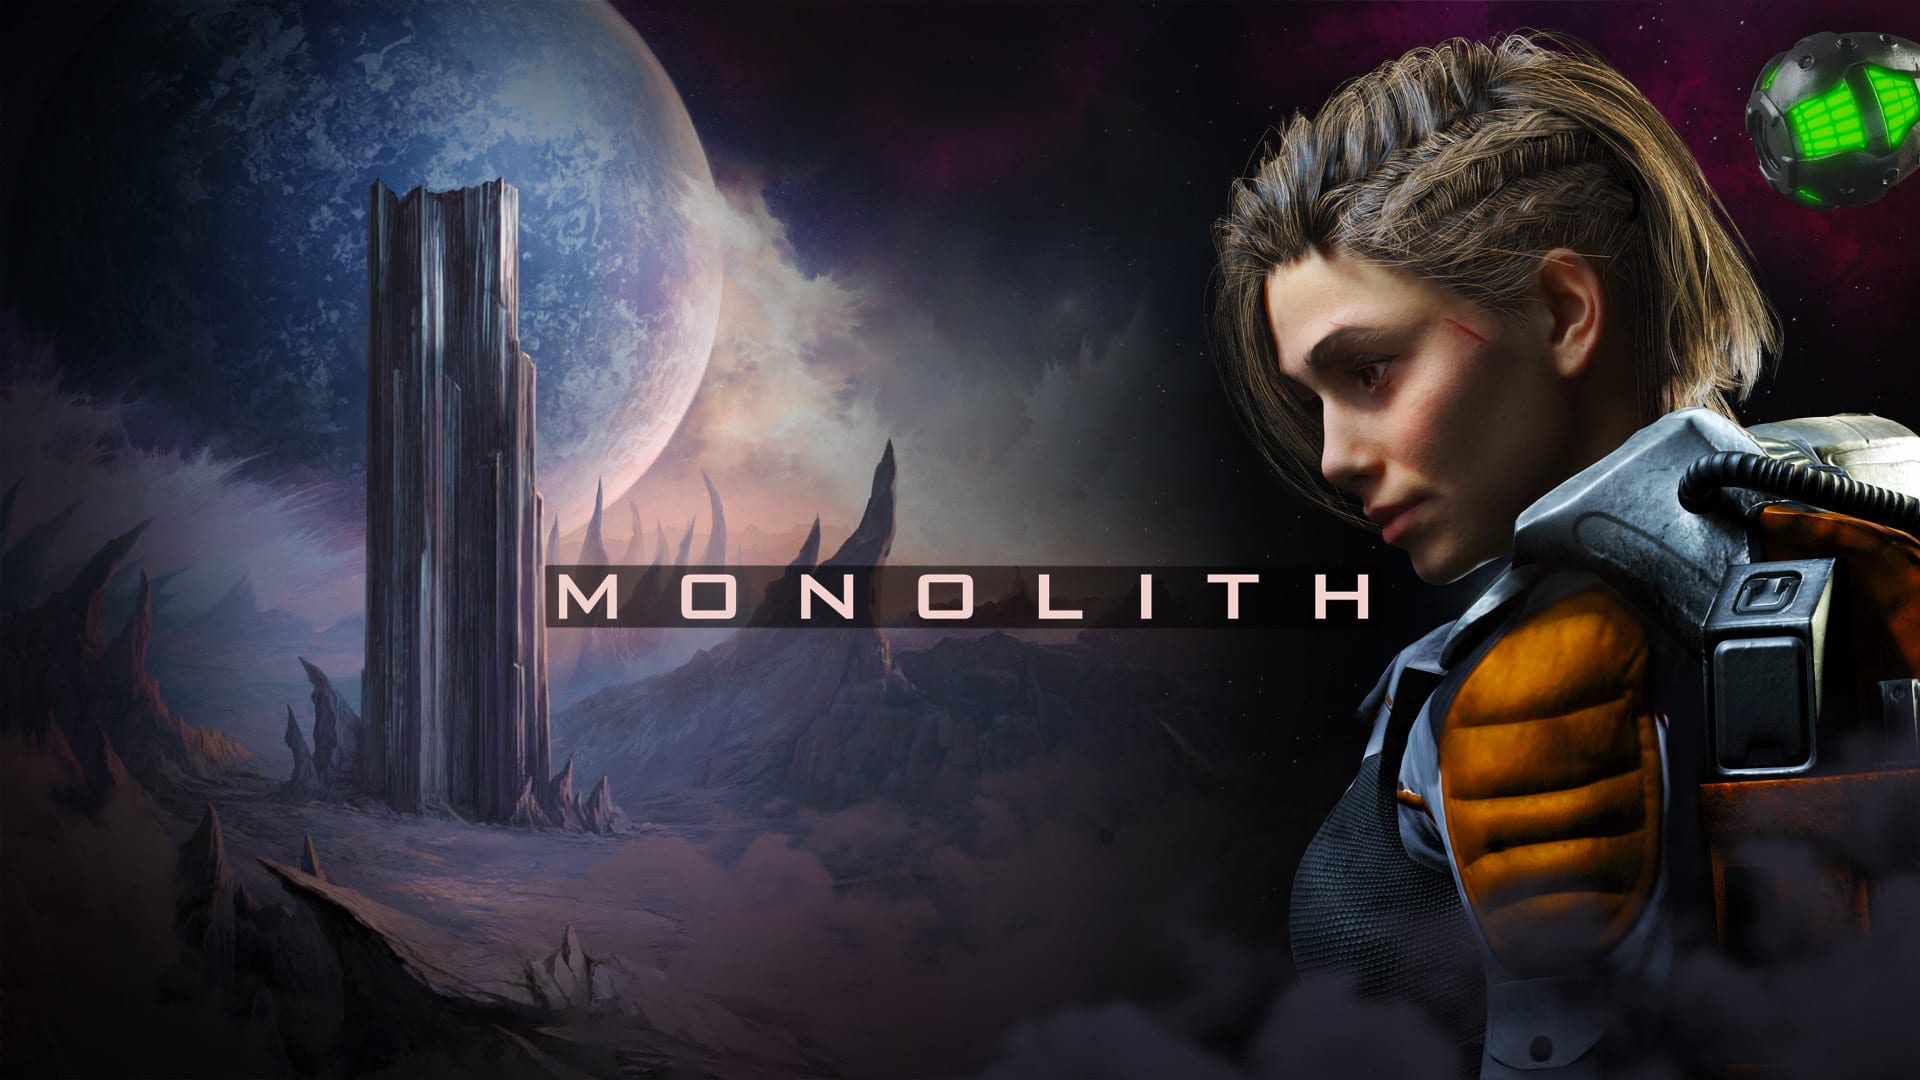 Monolith 1